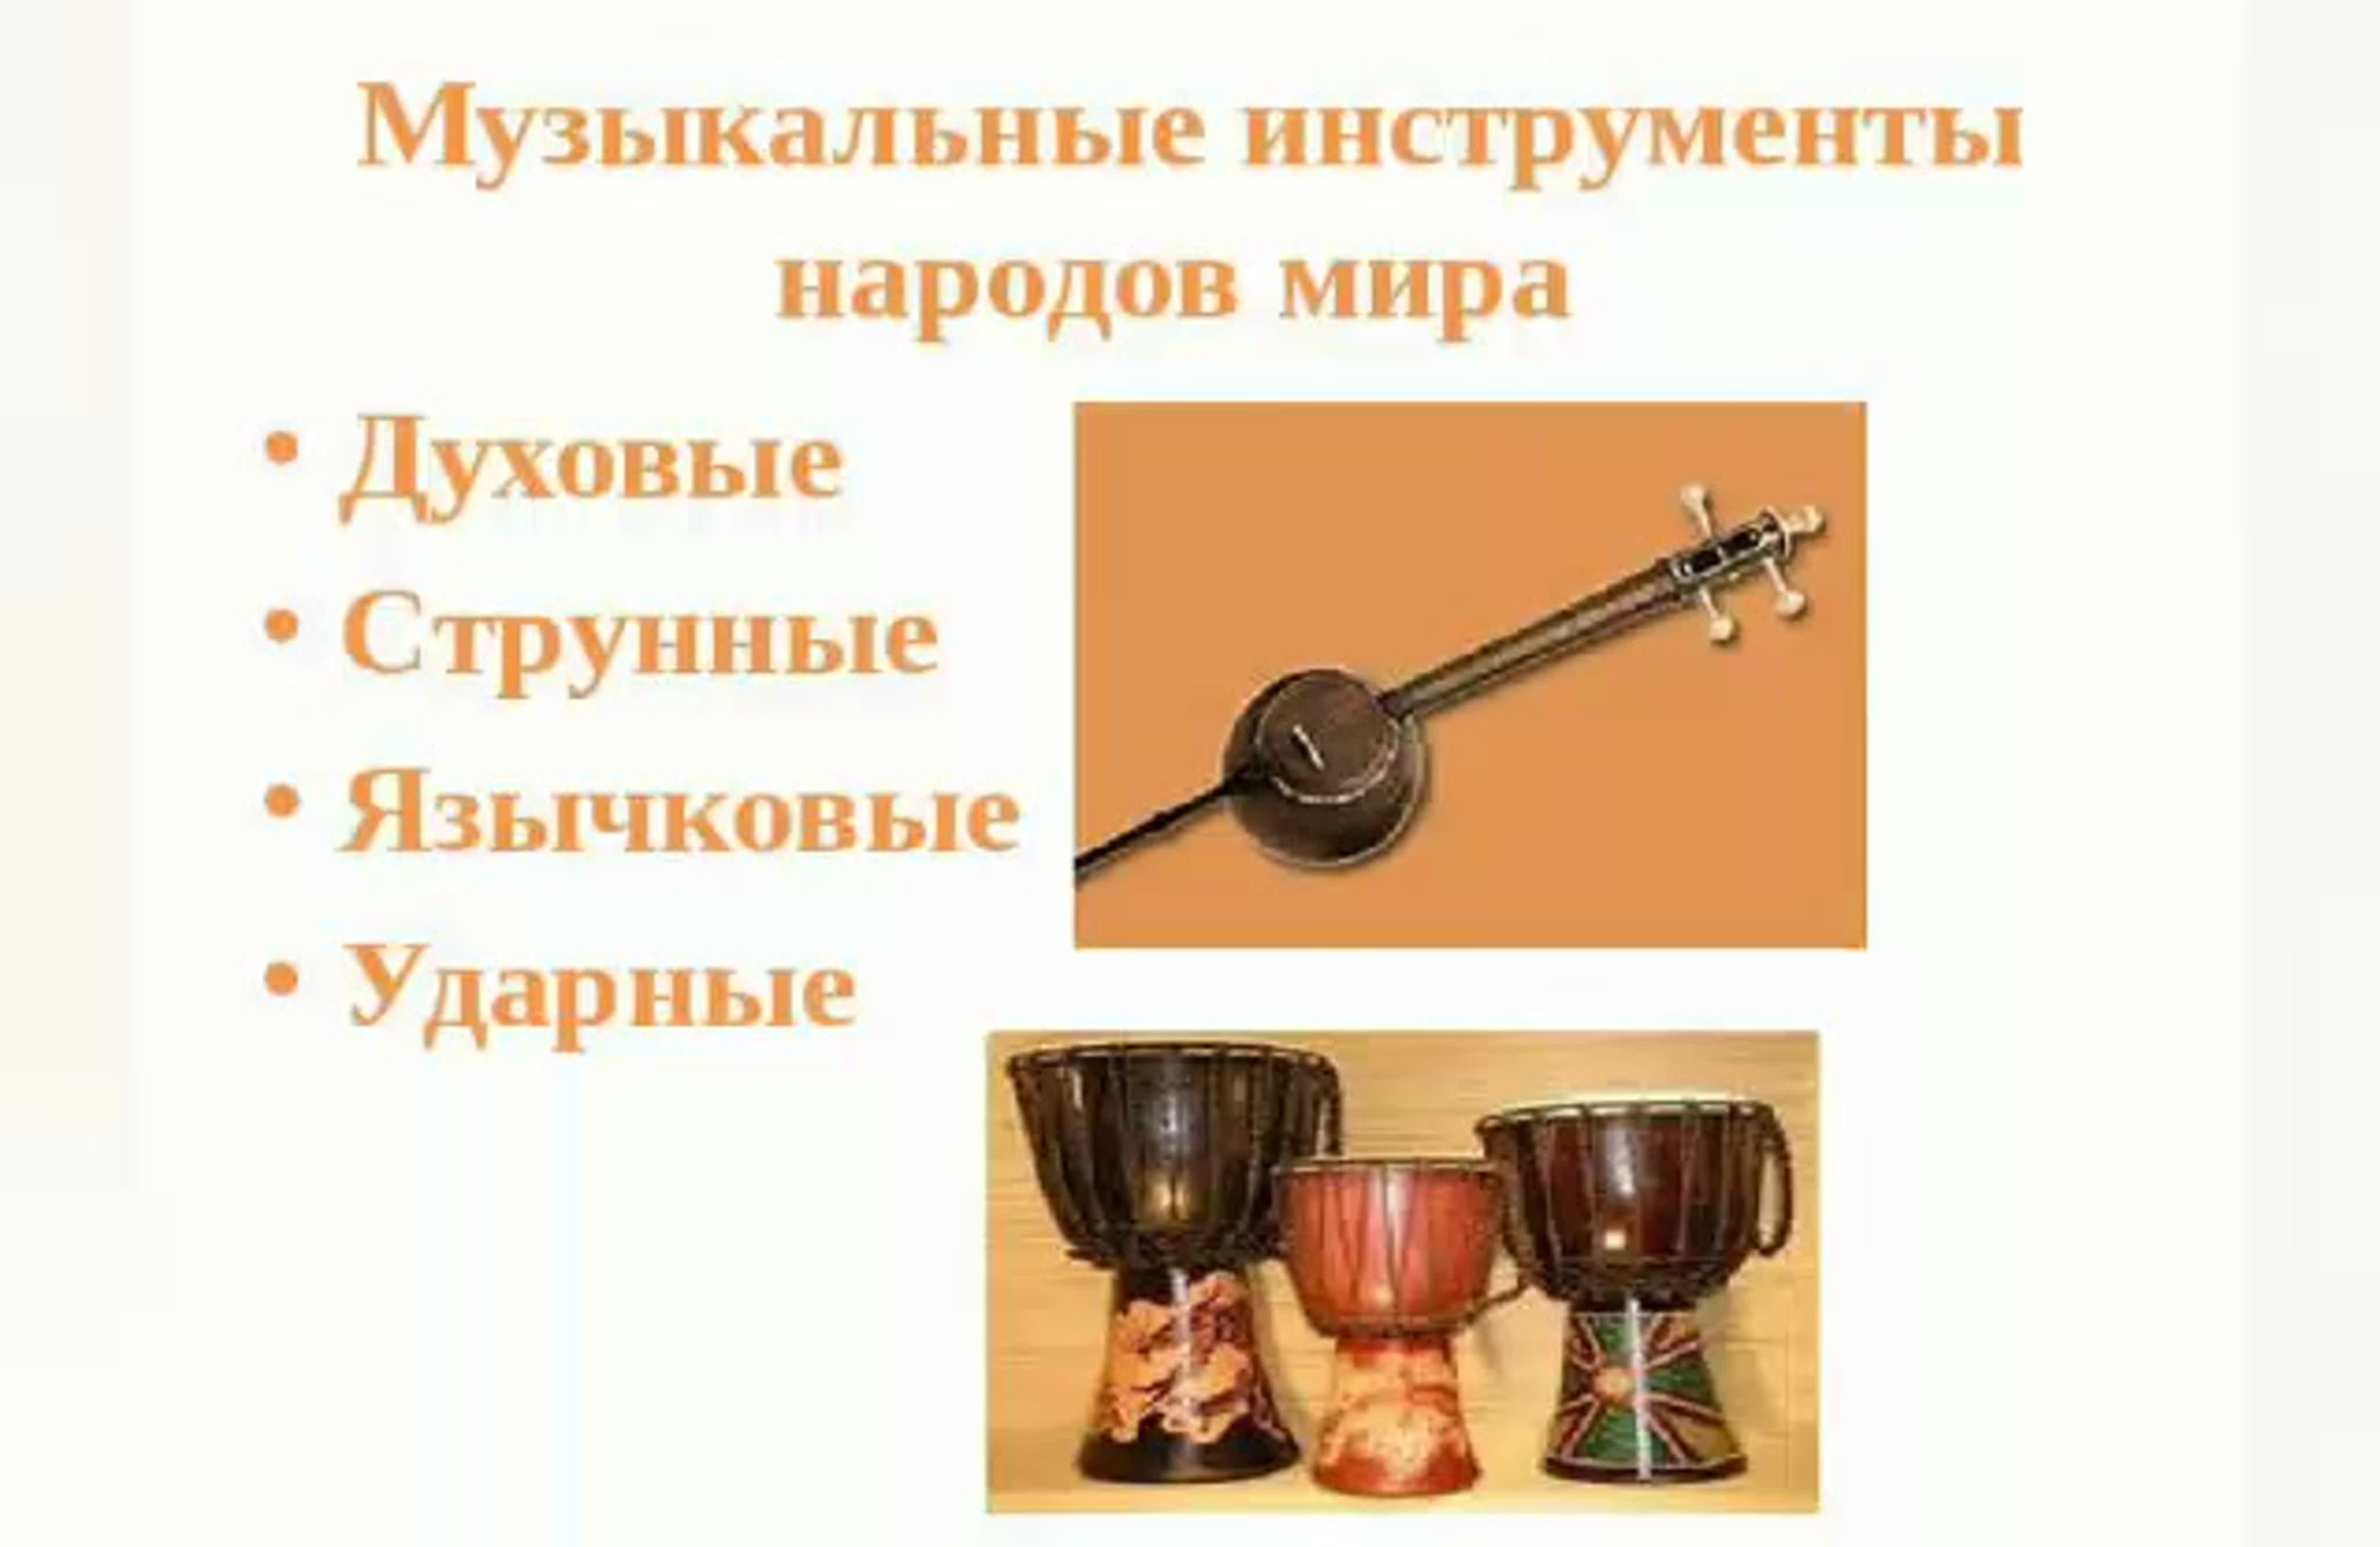 Любой народный музыкальный инструмент. Музыкальные инструменты разных народов. Струнные духовые ударные инструменты. Народные музыкальные инструменты.